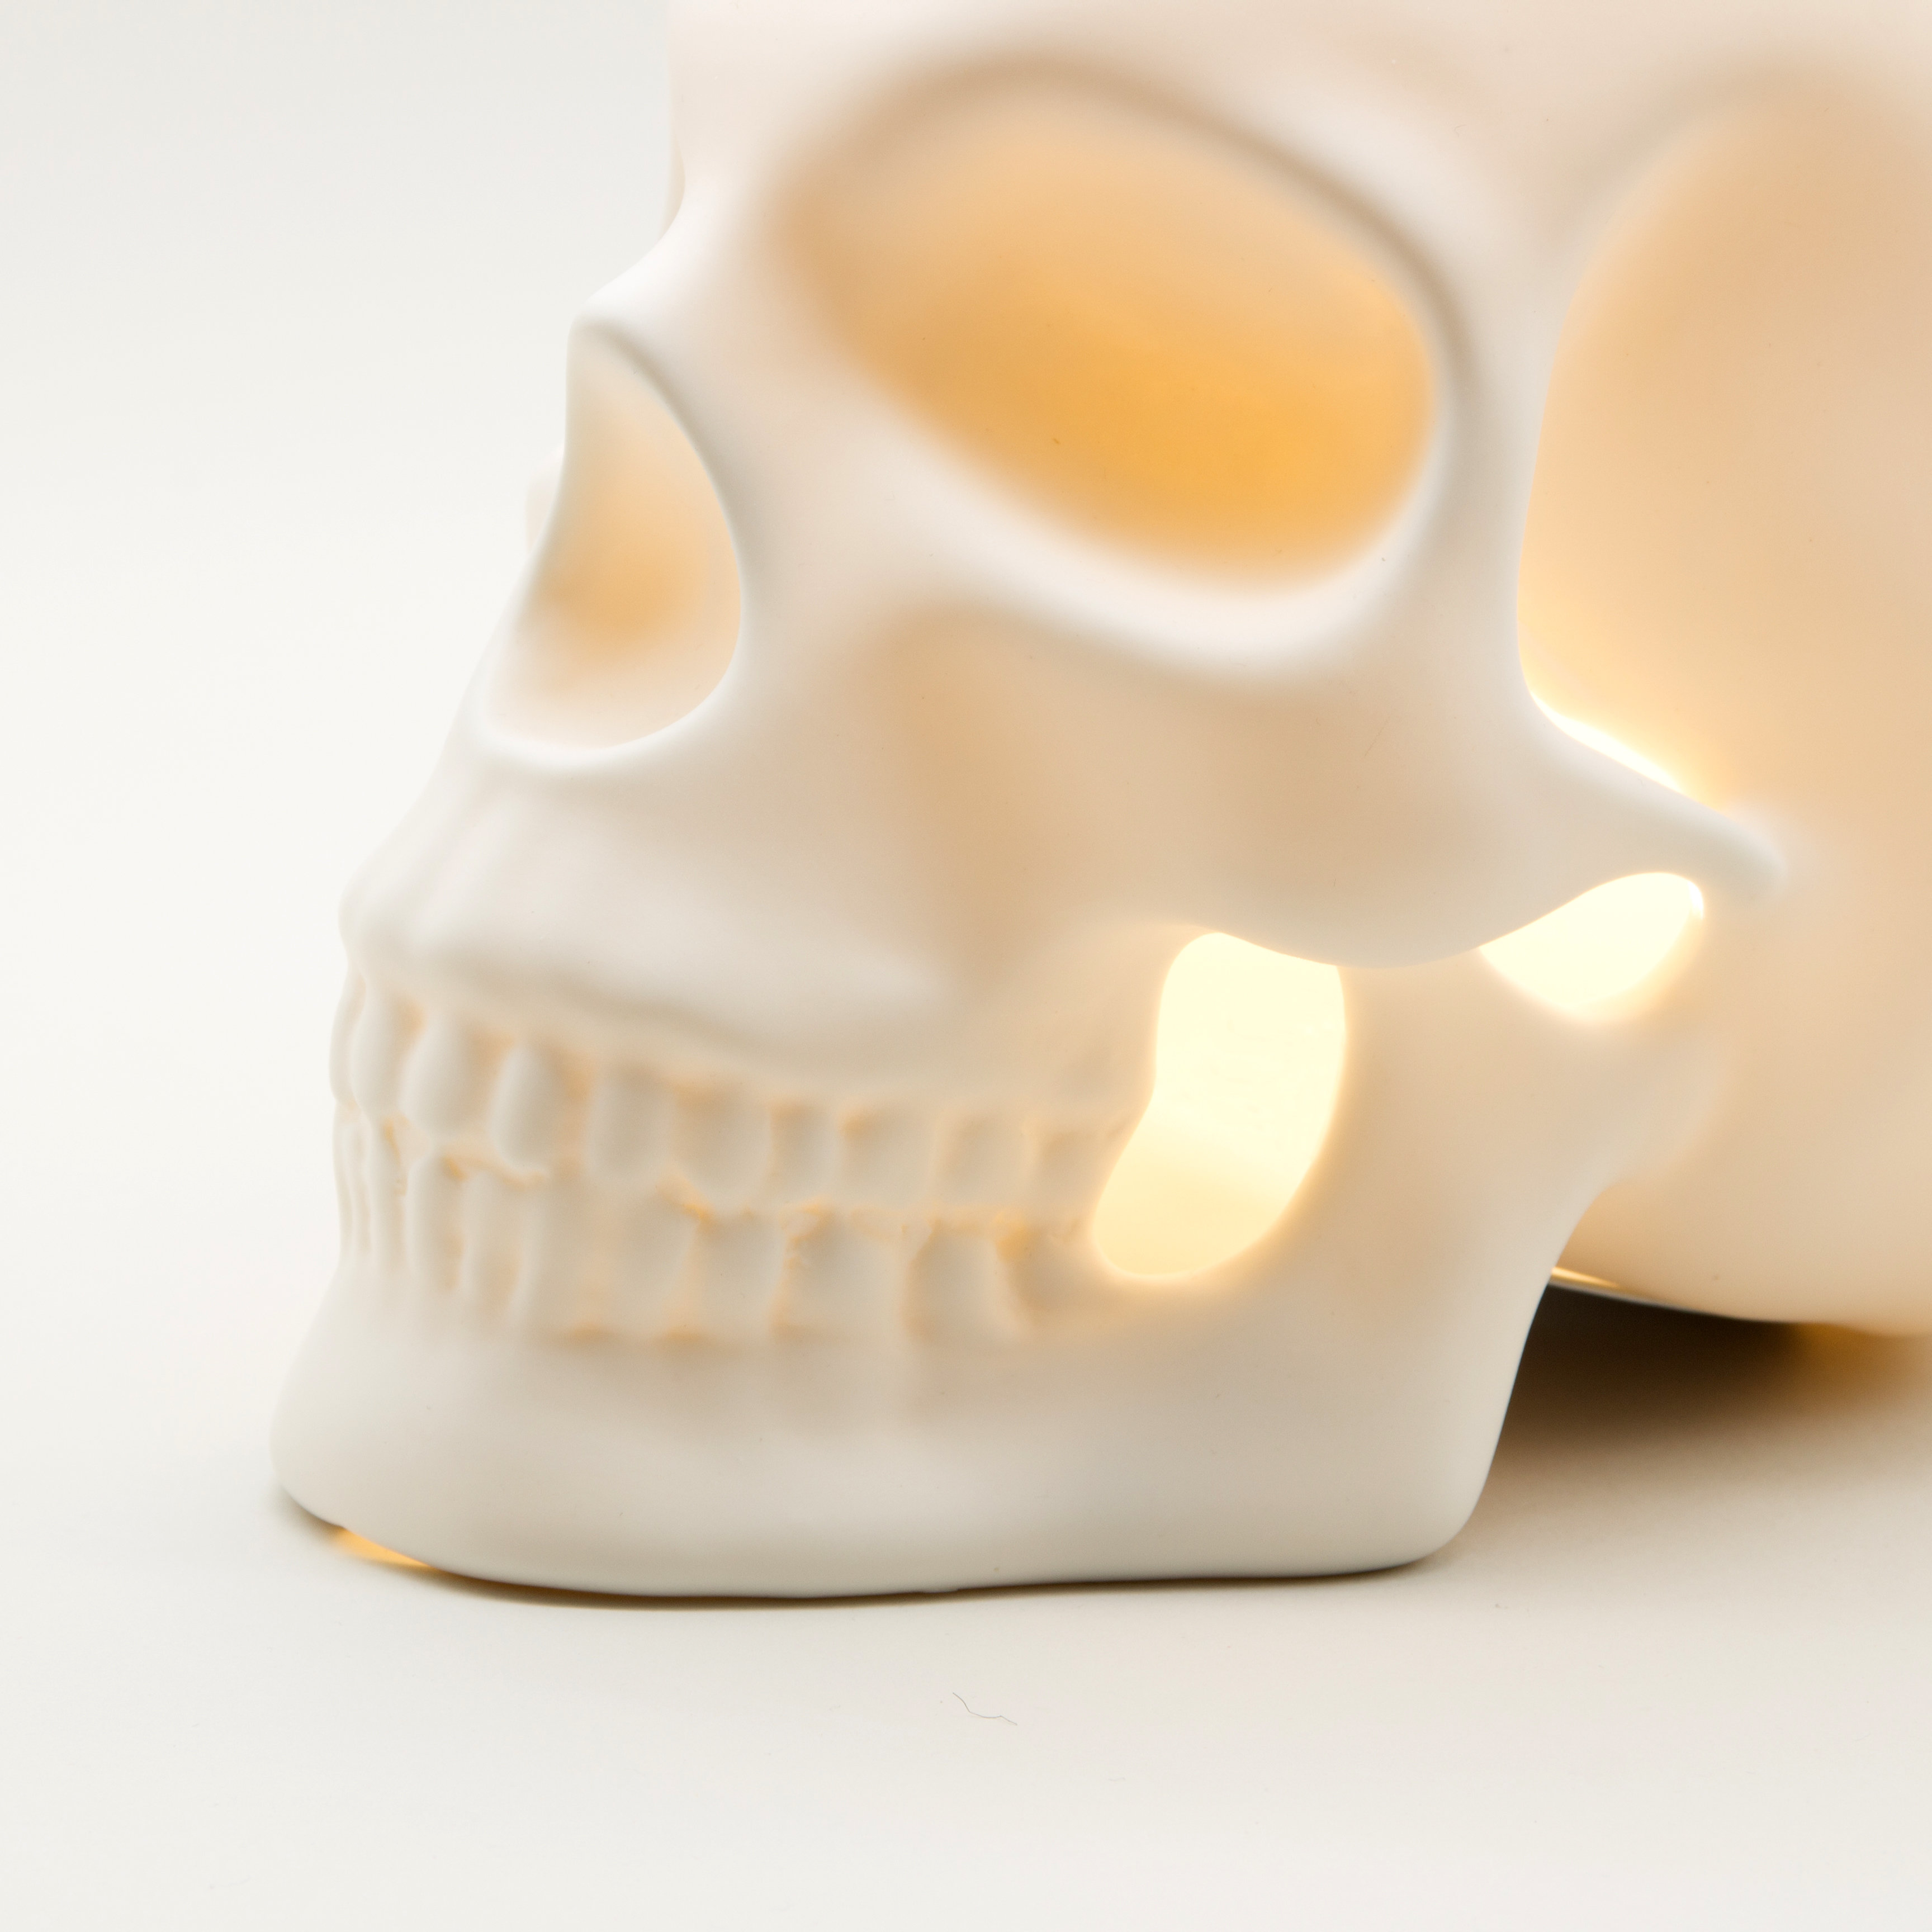 Skull light close up